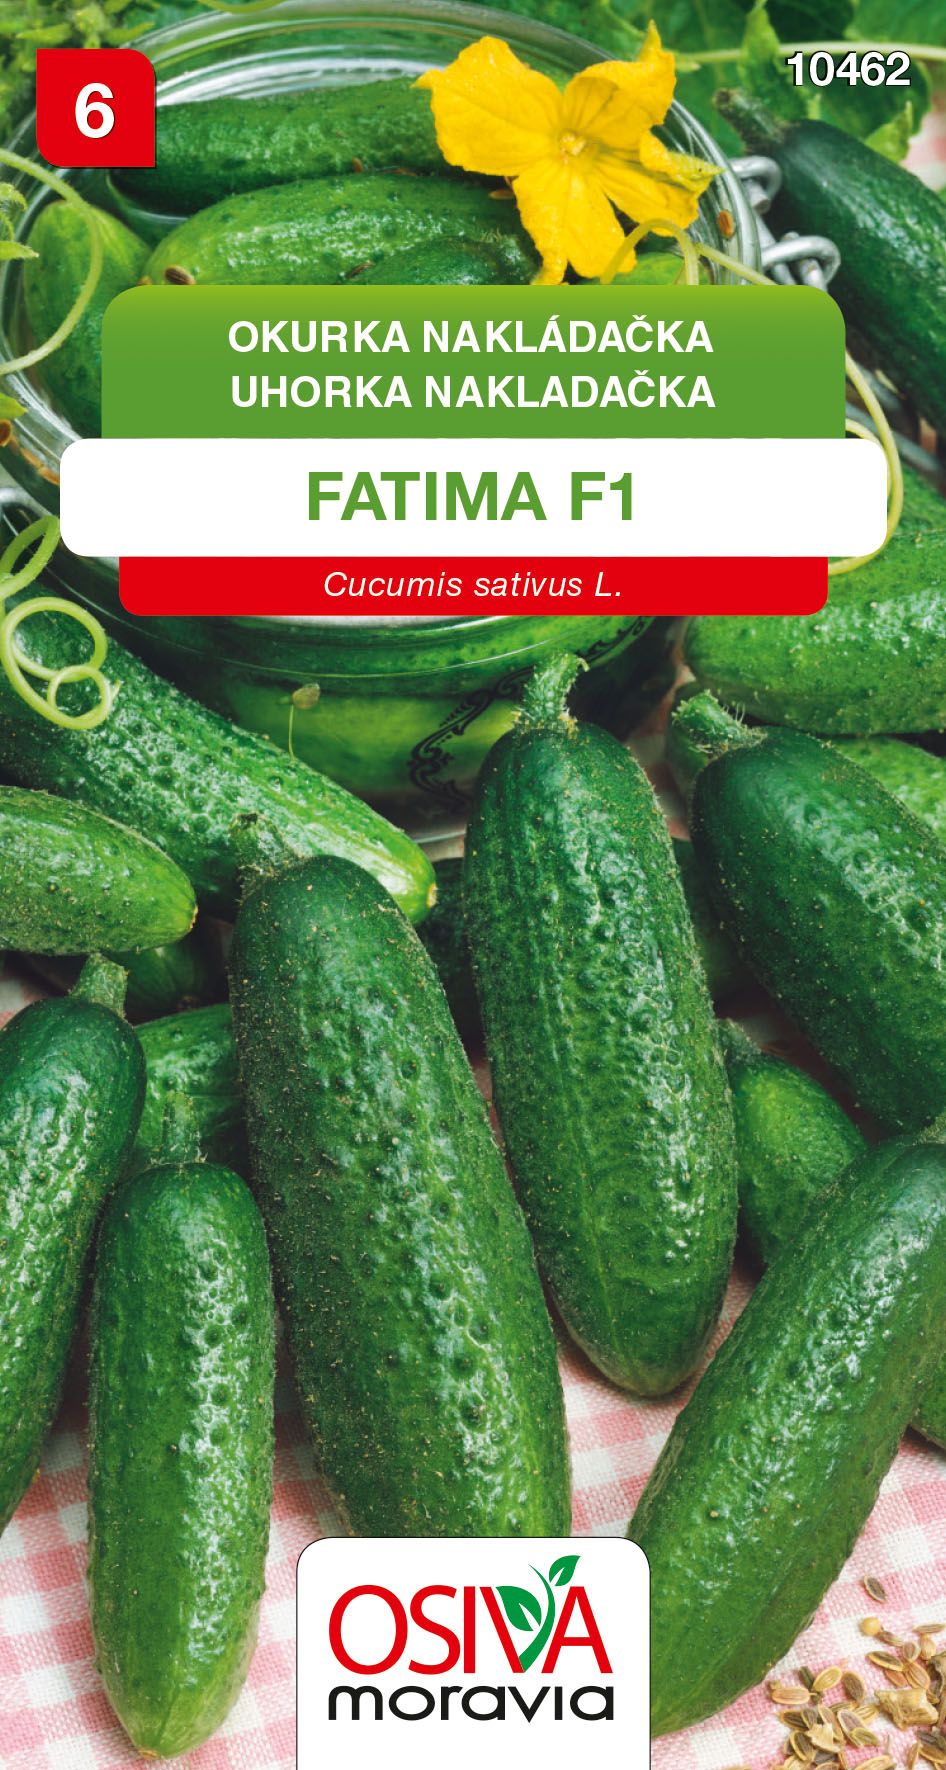 Okurka nakladačka - Fatima F1